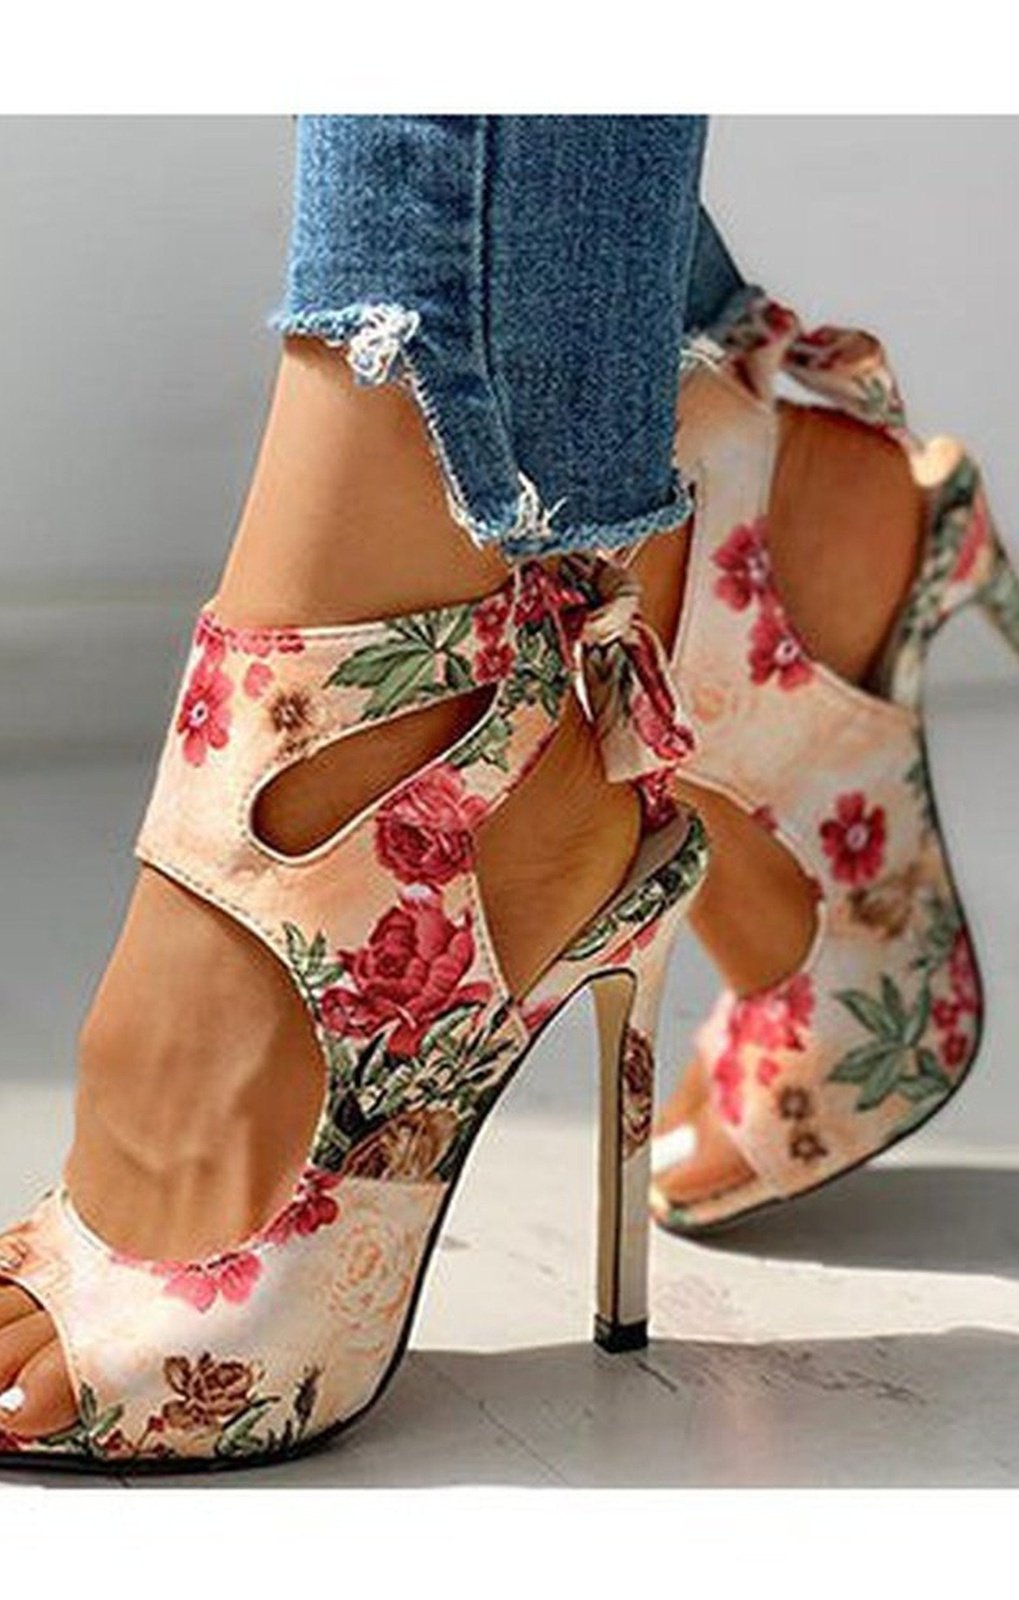 Women's Floral Print Cut Out Stiletto Heels Sandals